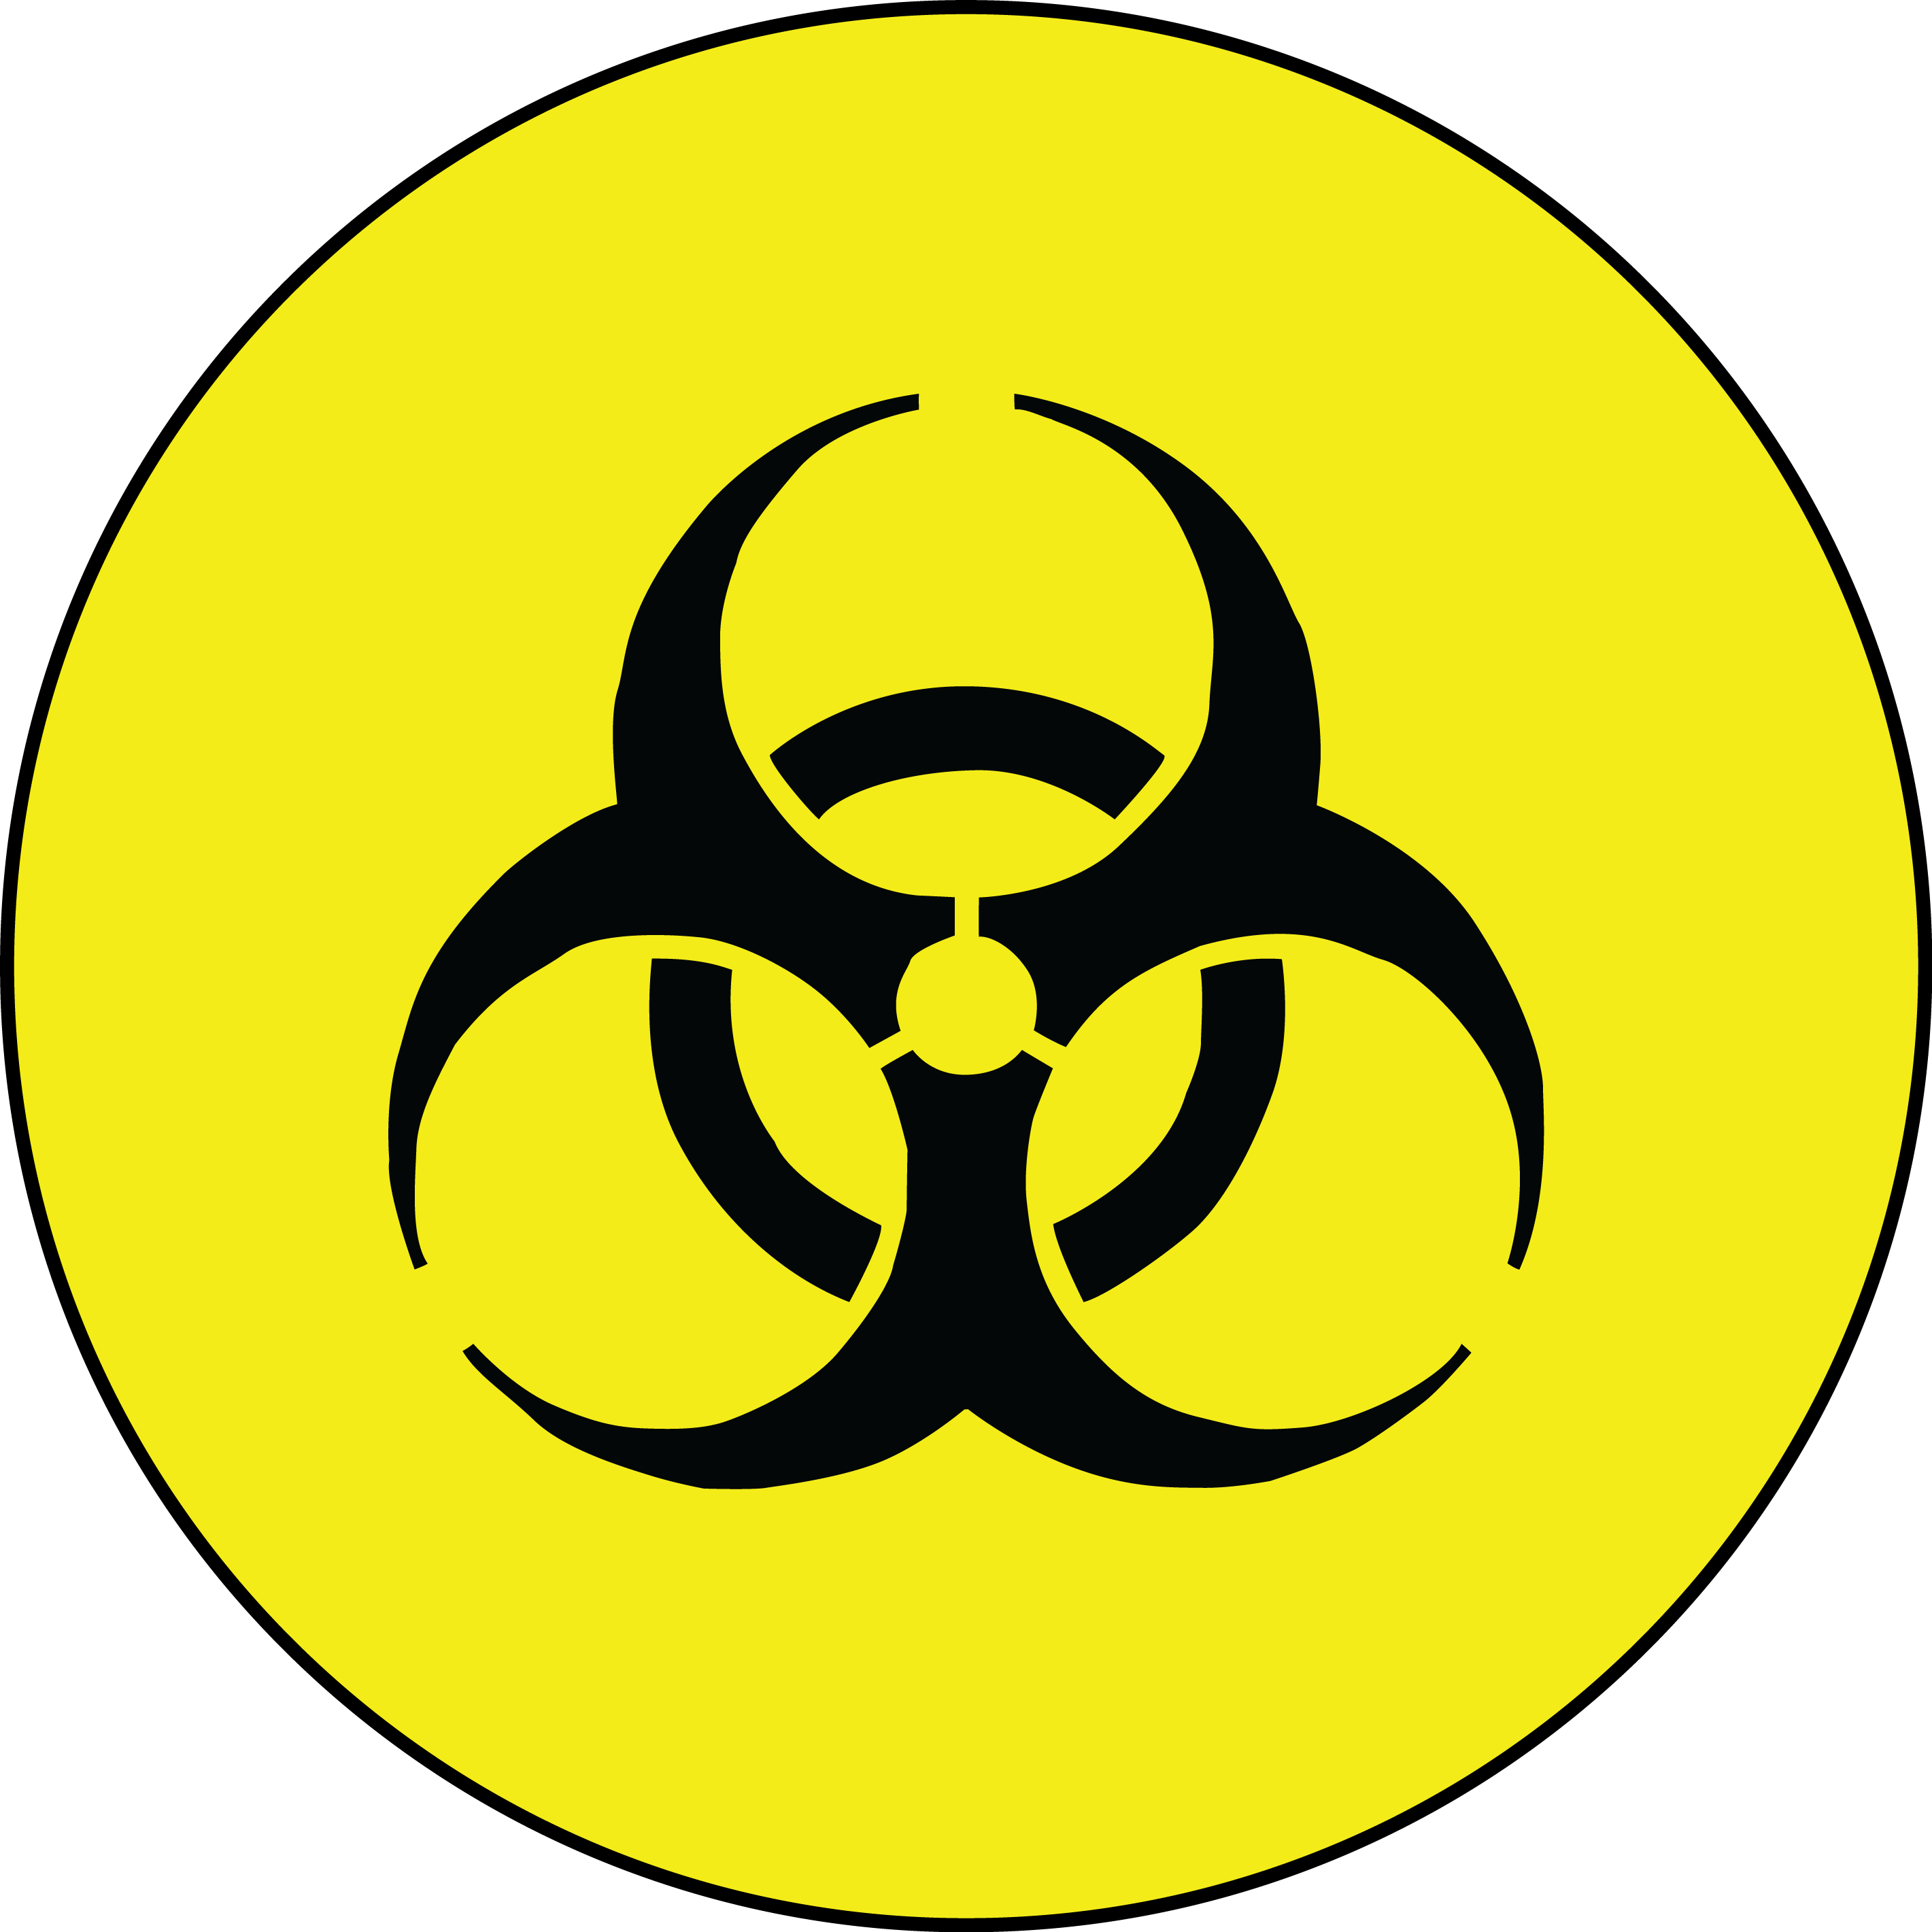 Orange Biohazard Logo - Biohazard Symbol PNG Transparent Images | PNG All